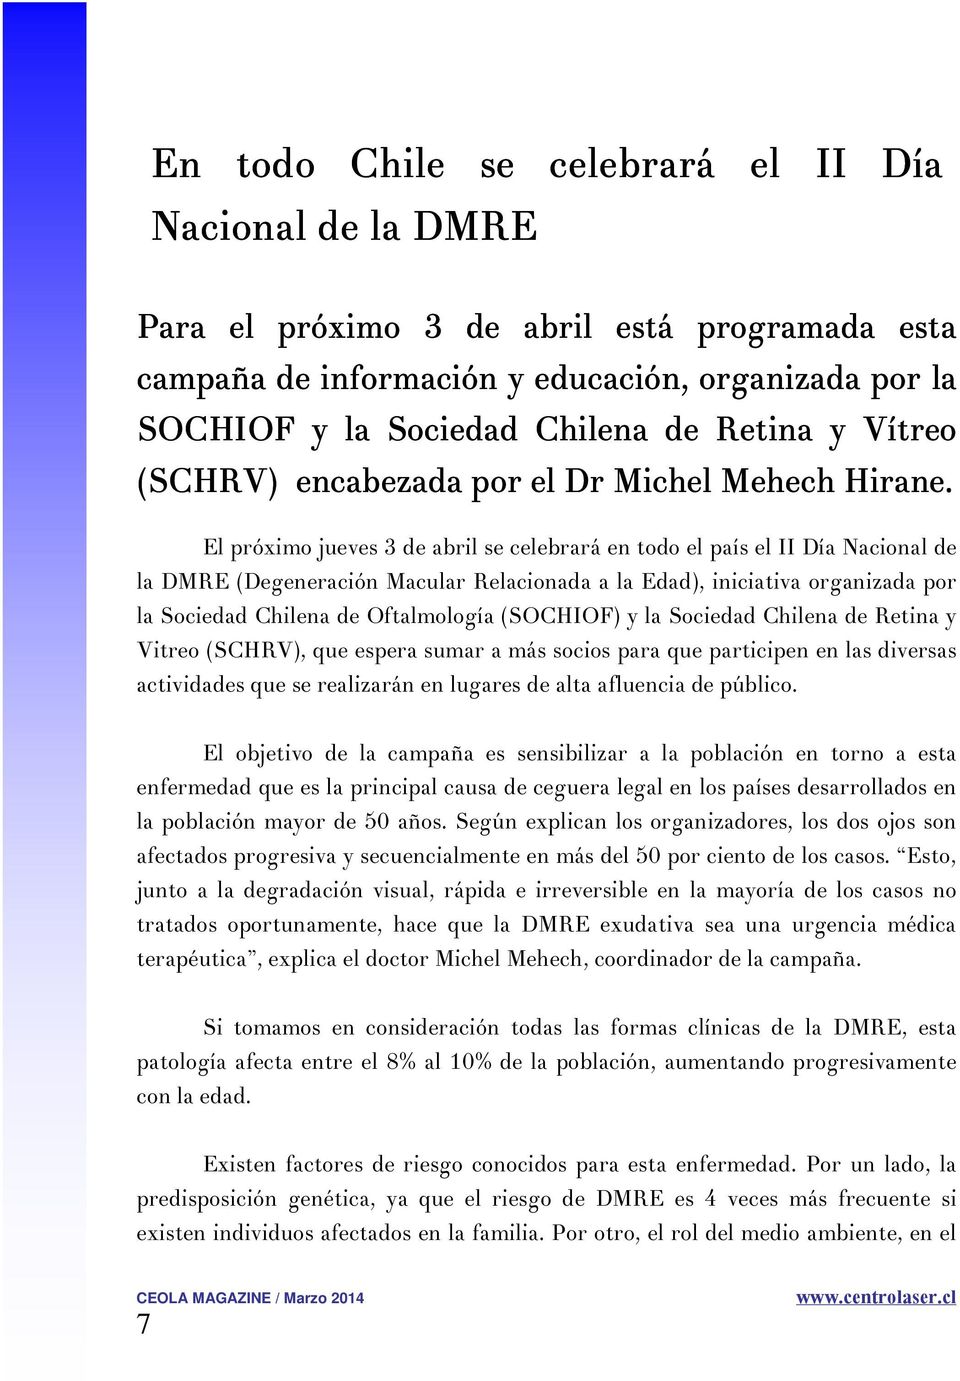 El próximo jueves 3 de abril se celebrará en todo el país el II Día Nacional de la DMRE (Degeneración Macular Relacionada a la Edad), iniciativa organizada por la Sociedad Chilena de Oftalmología